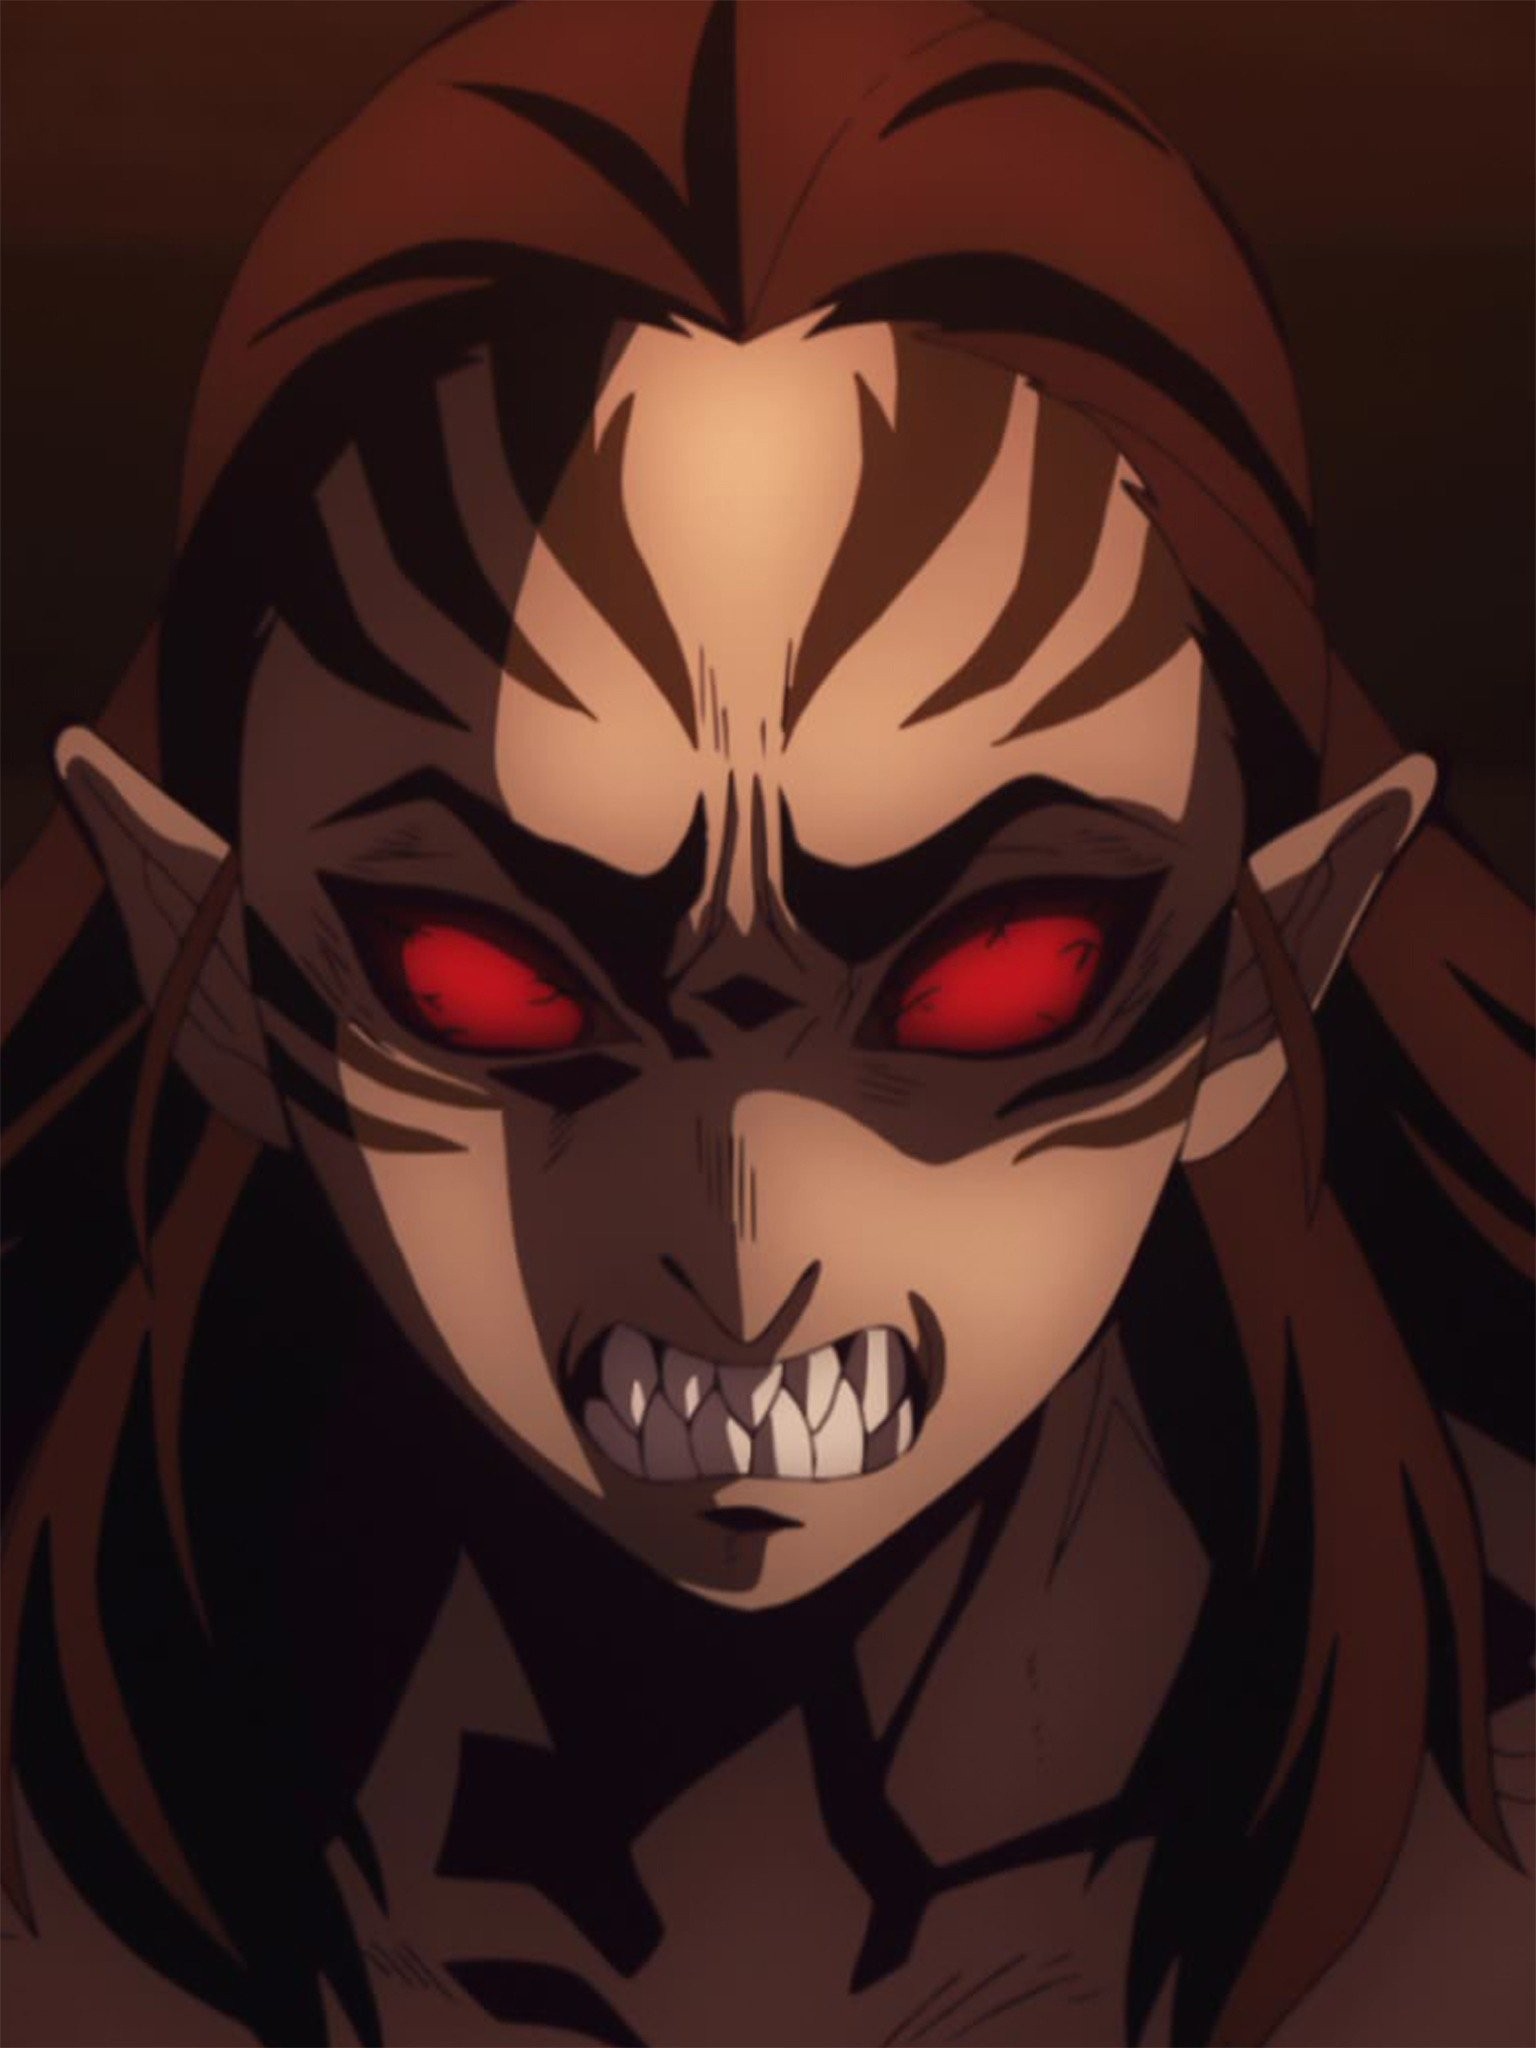 Watch Demon Slayer: Kimetsu no Yaiba season 1 episode 13 streaming online